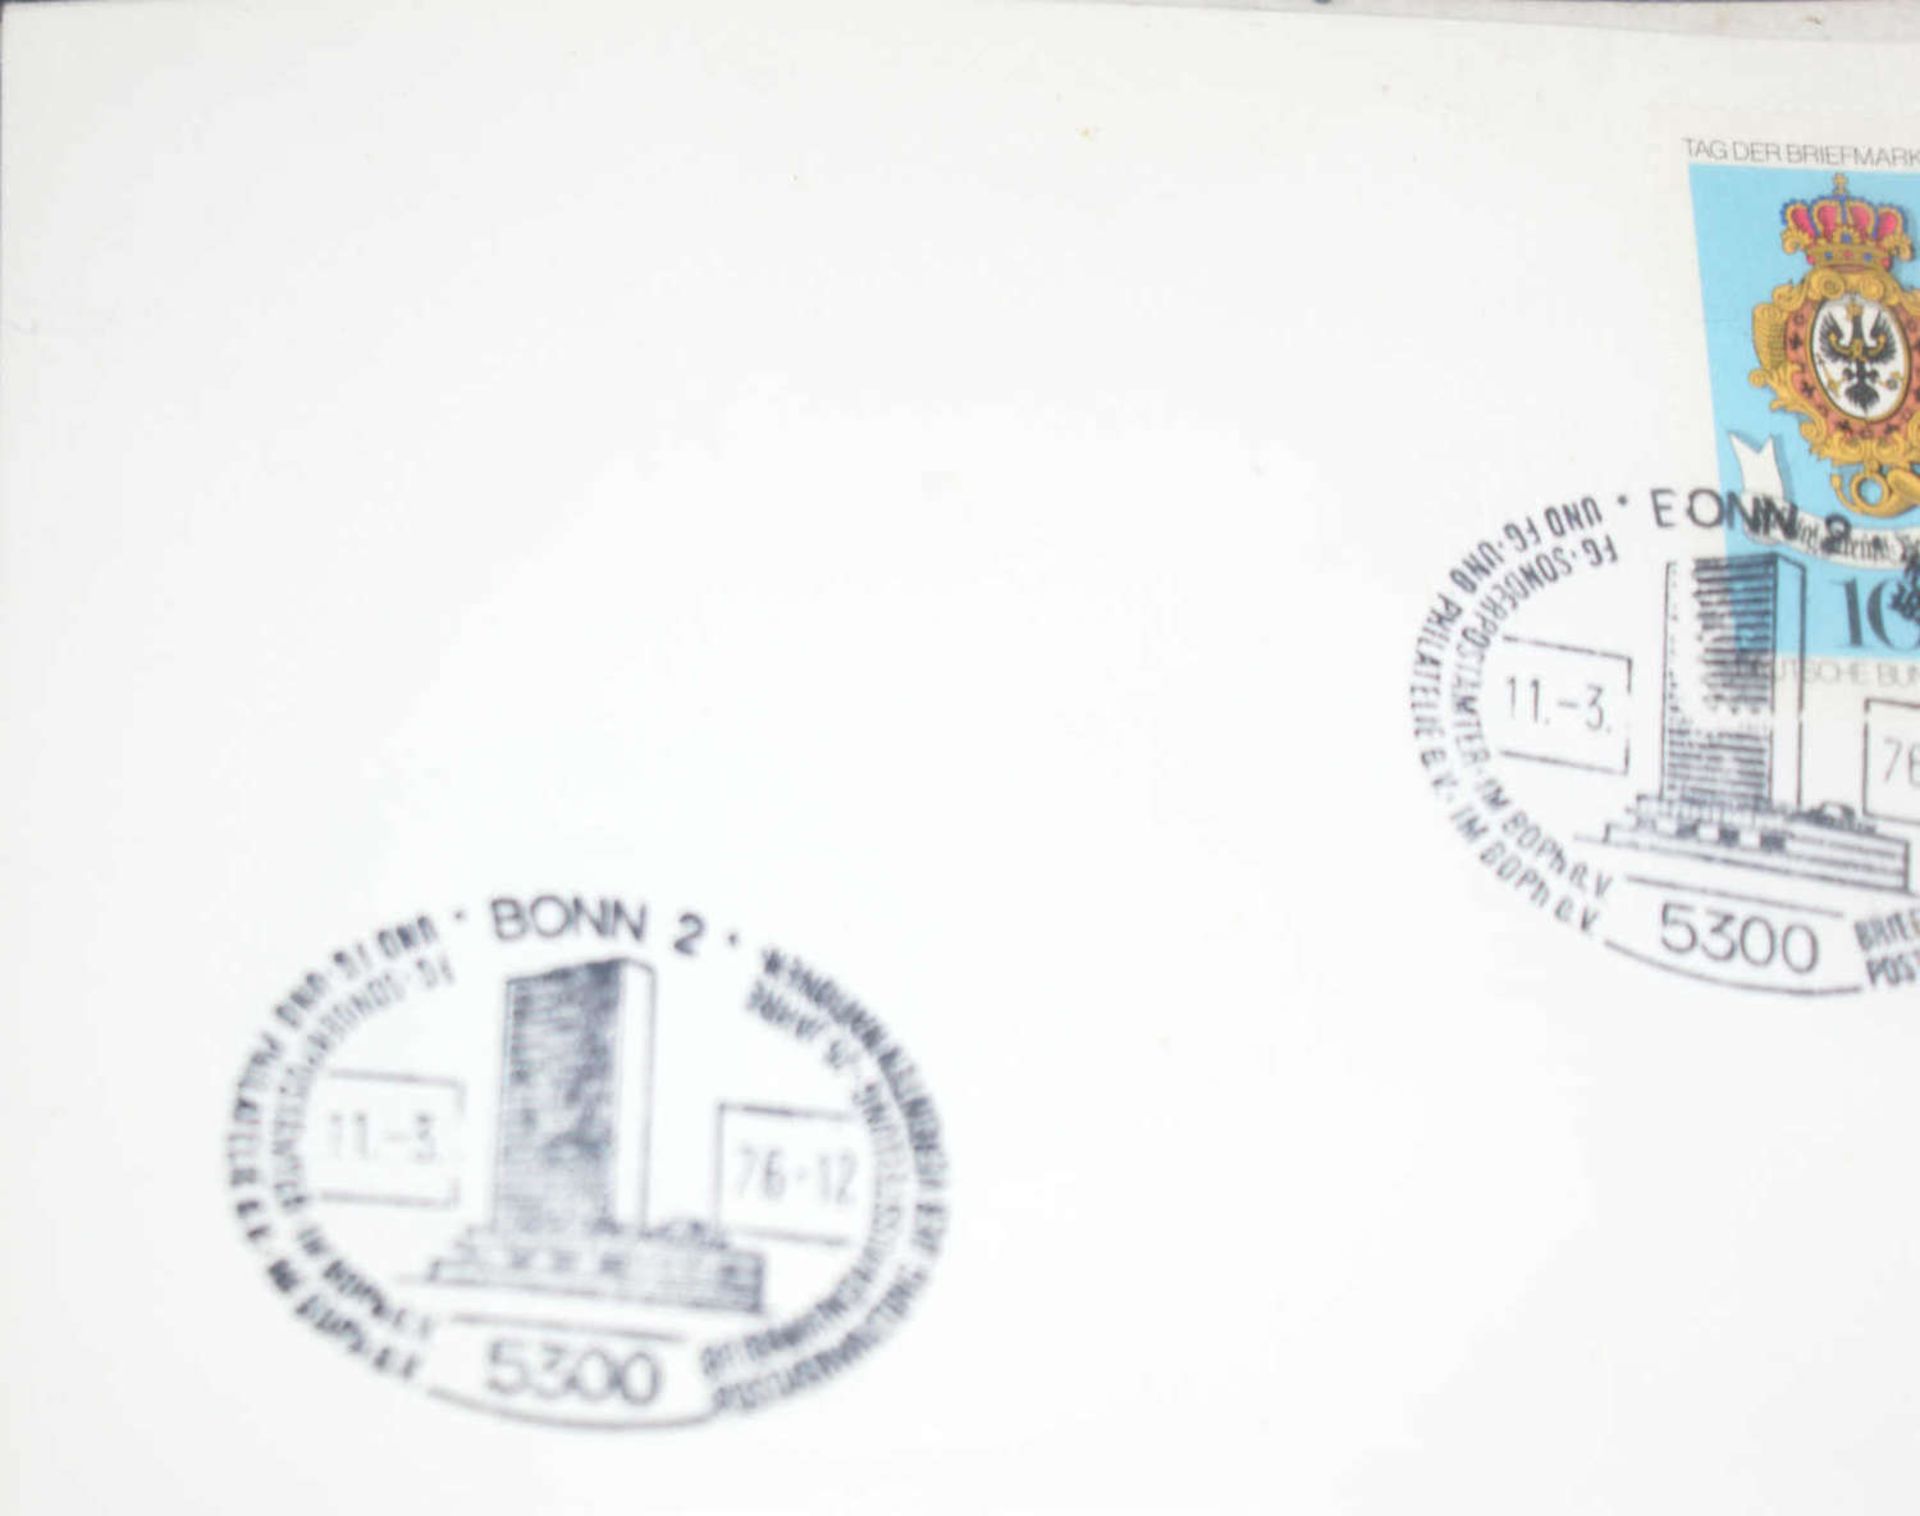 BRD - Briefmarken Dubletten Konvolut, bestehend aus 20 Alben, teilweise schlecht gelagert. - Image 2 of 6